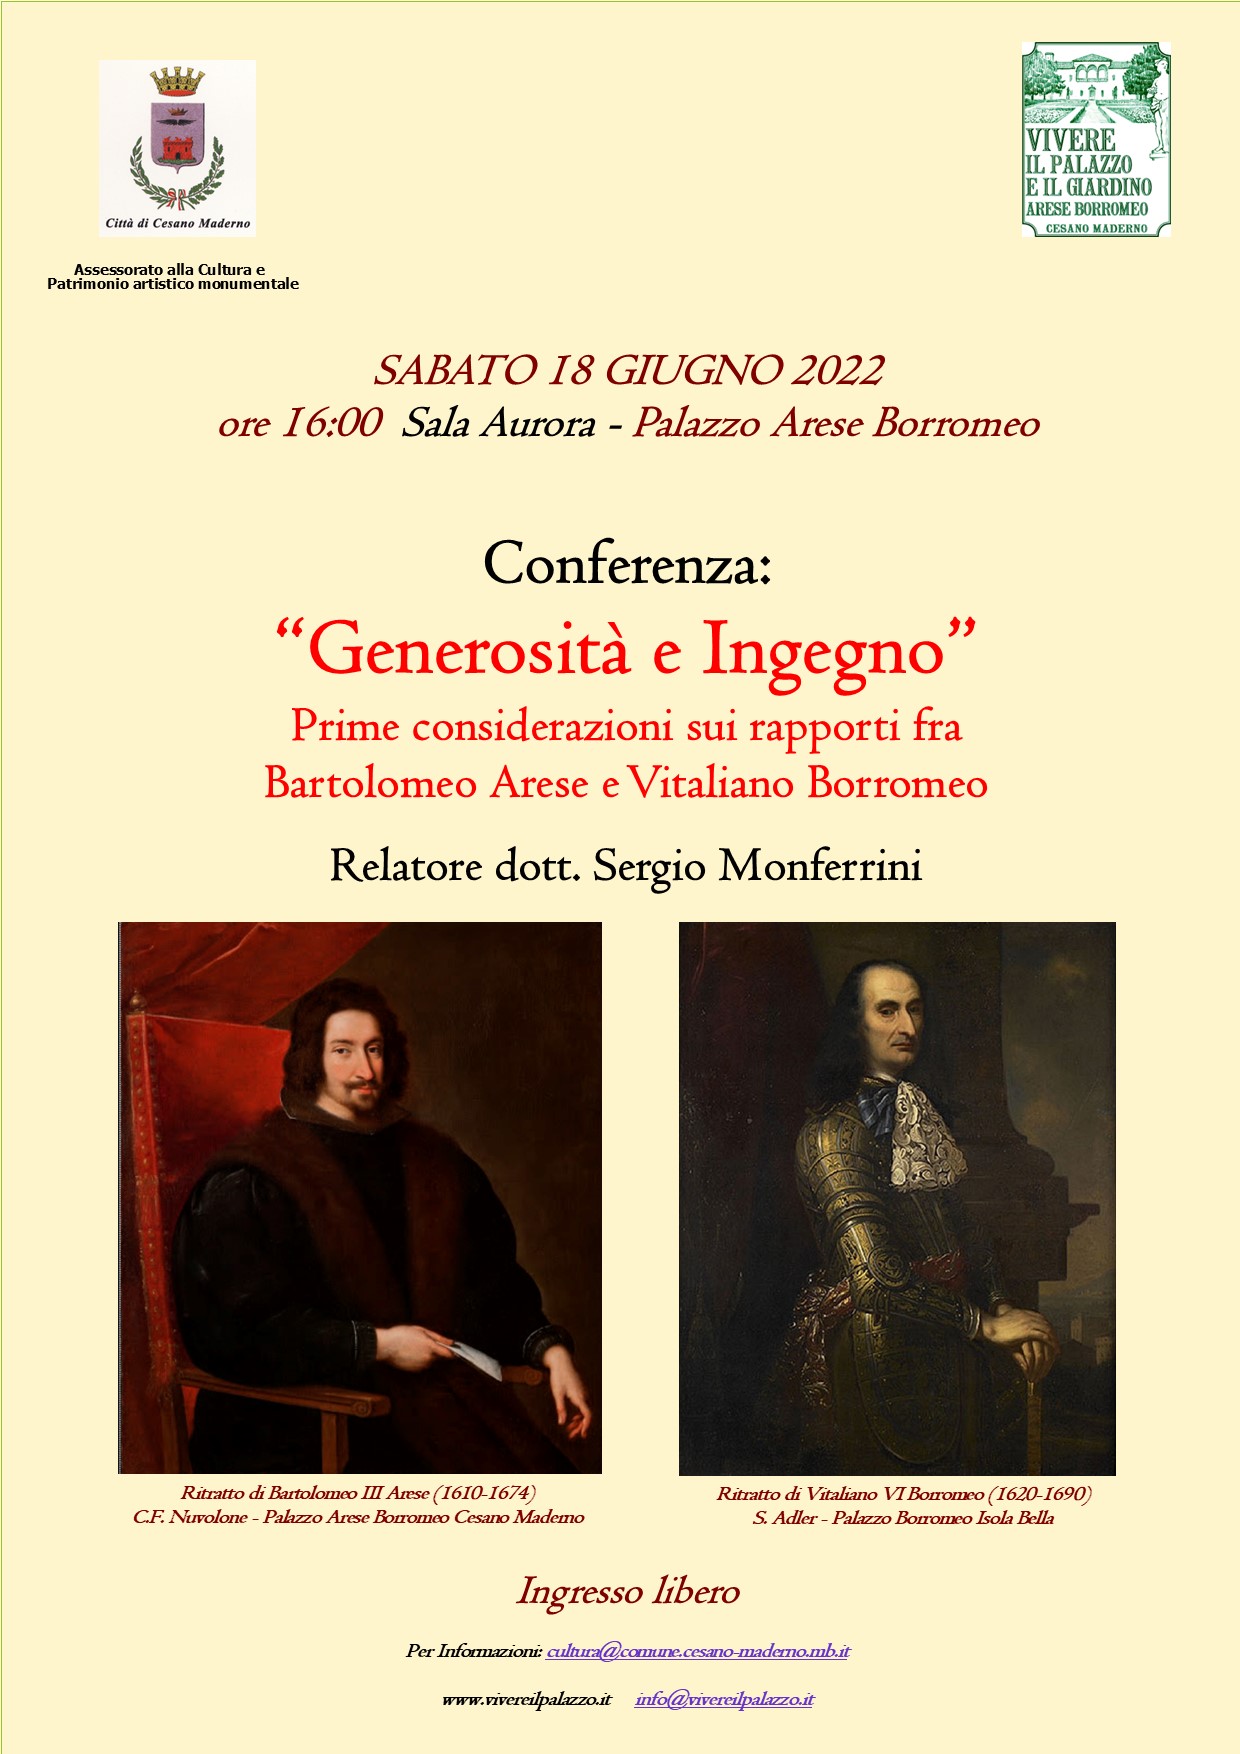 Generosit e Ingegno: Prime considerazioni sui rapporti fra Bartolomeo Arese e Vitaliano Borromeo